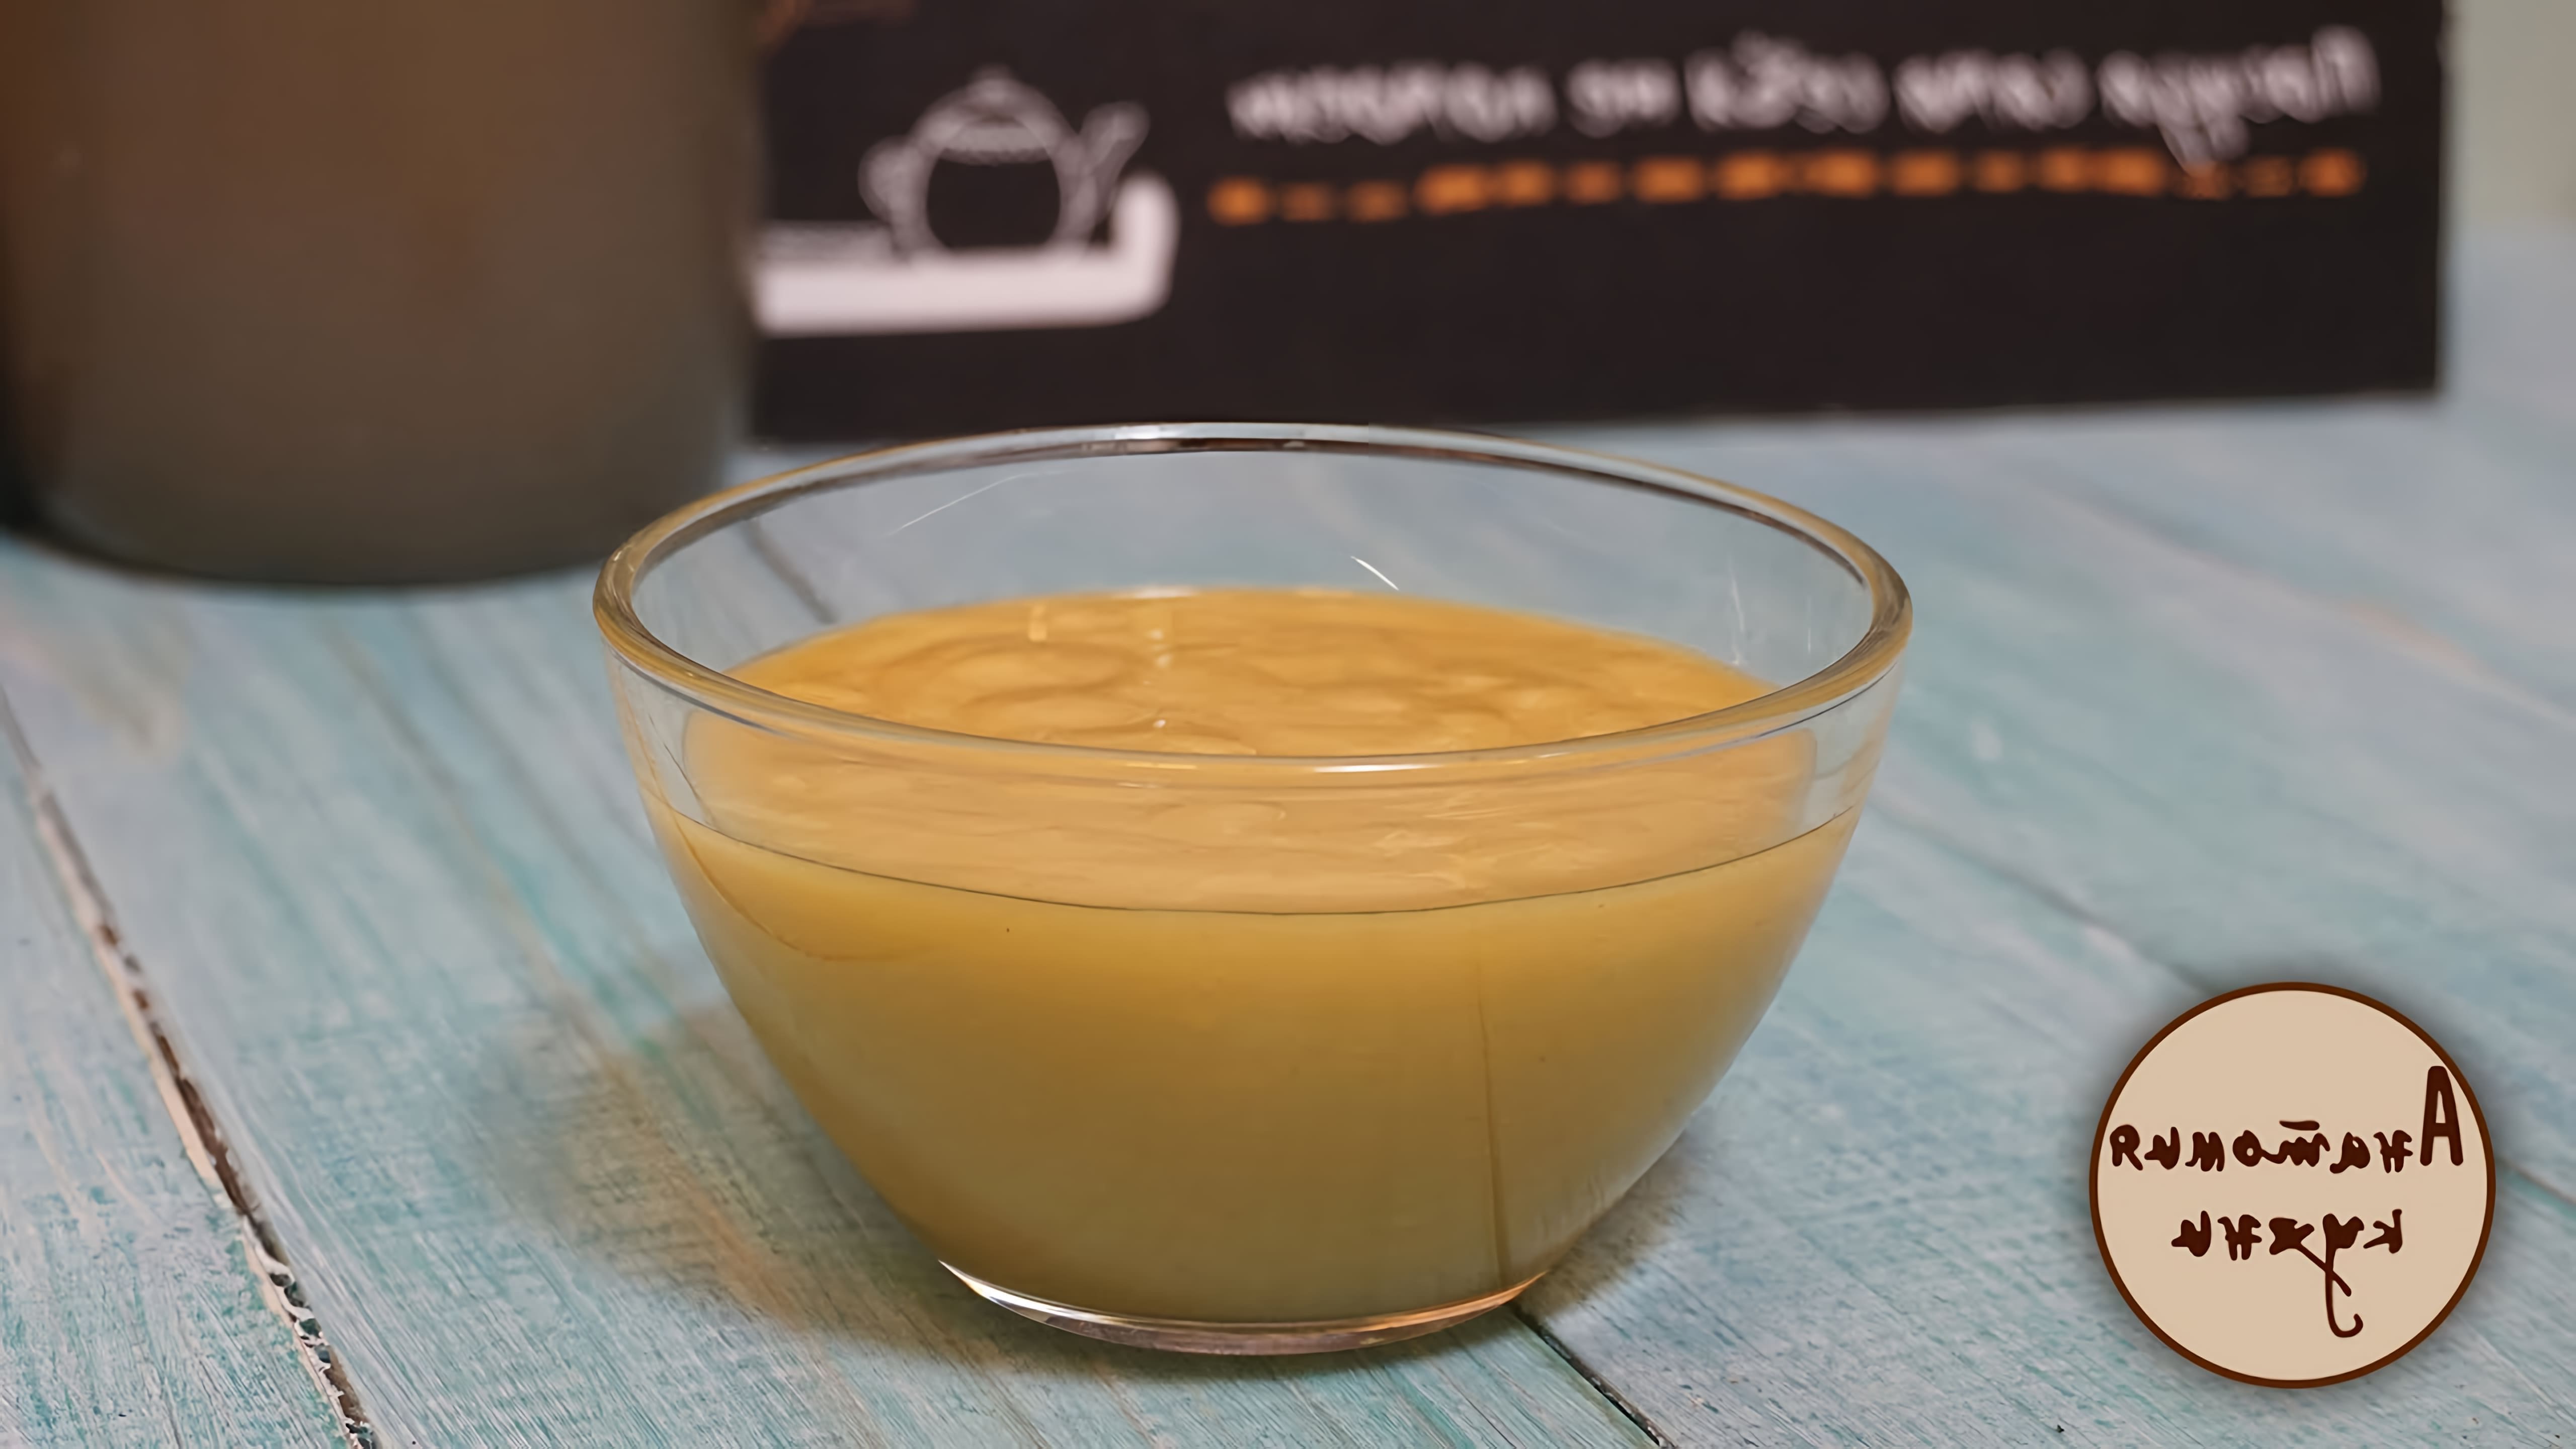 В этом видео демонстрируется рецепт приготовления соуса "Винегрет" с горчицей и мёдом, который может стать отличной заменой майонезу